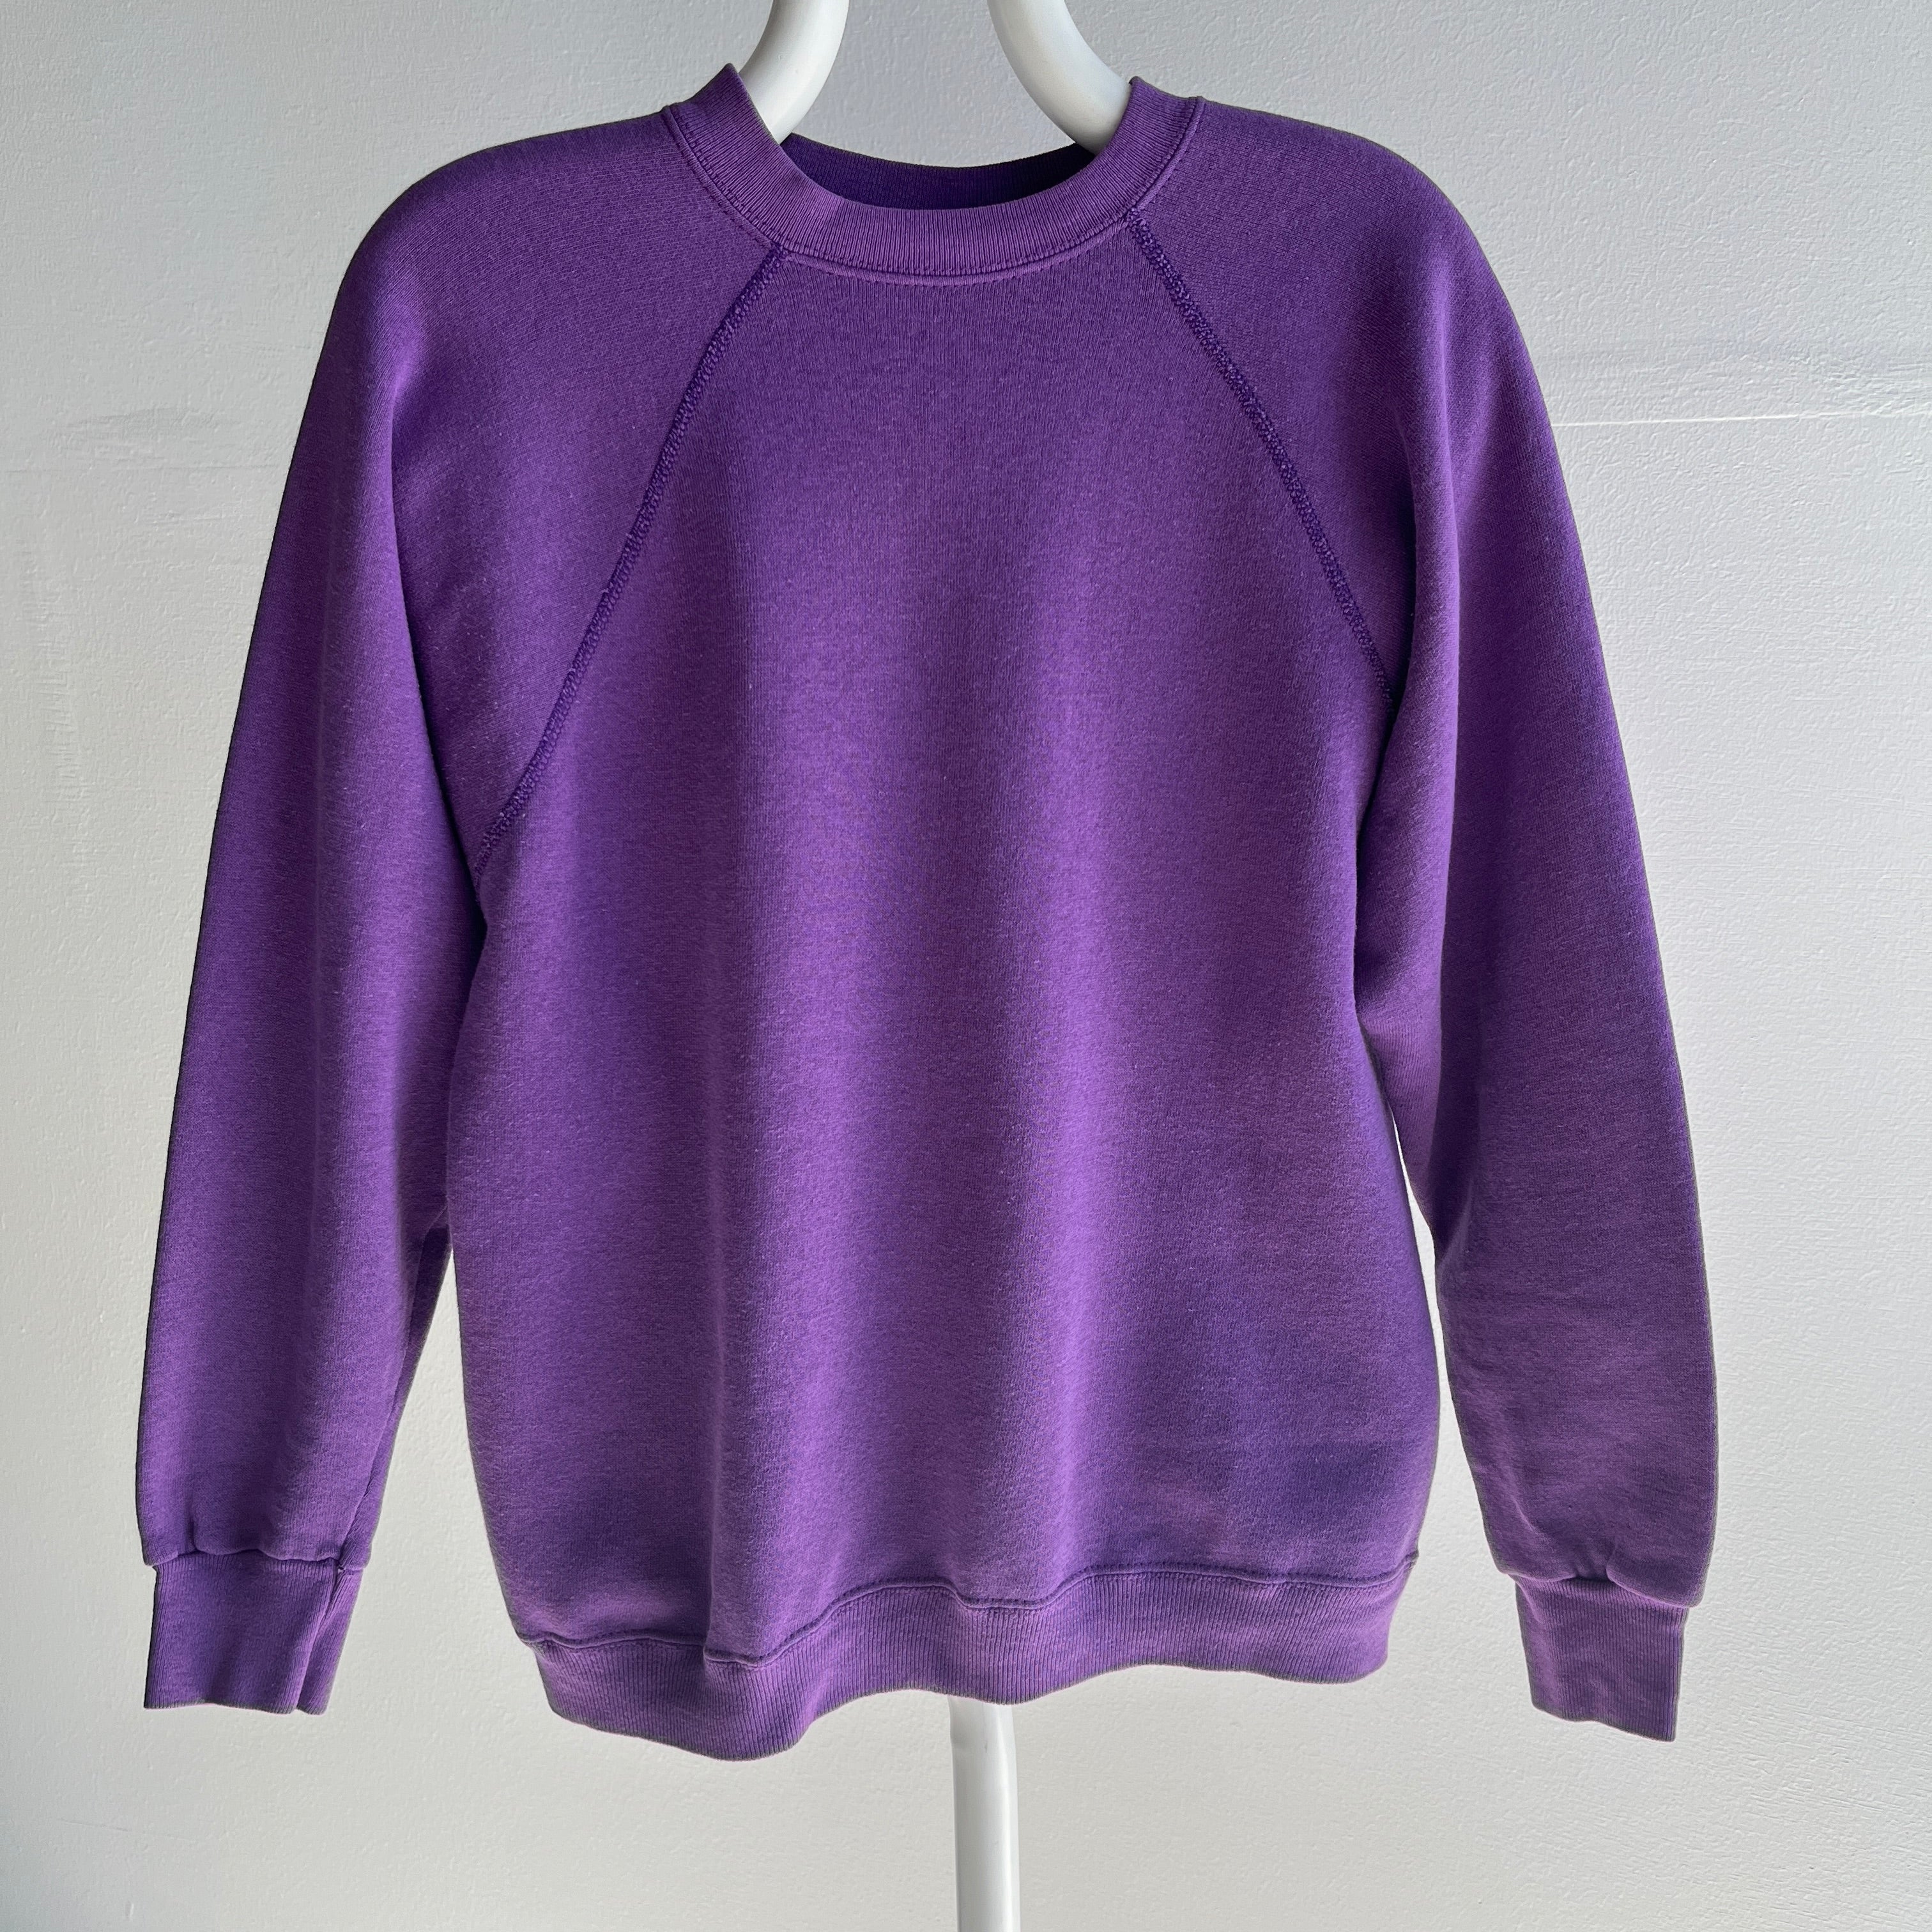 1980s Sweats Appeal by Tultex Nicely Faded Purple Raglan